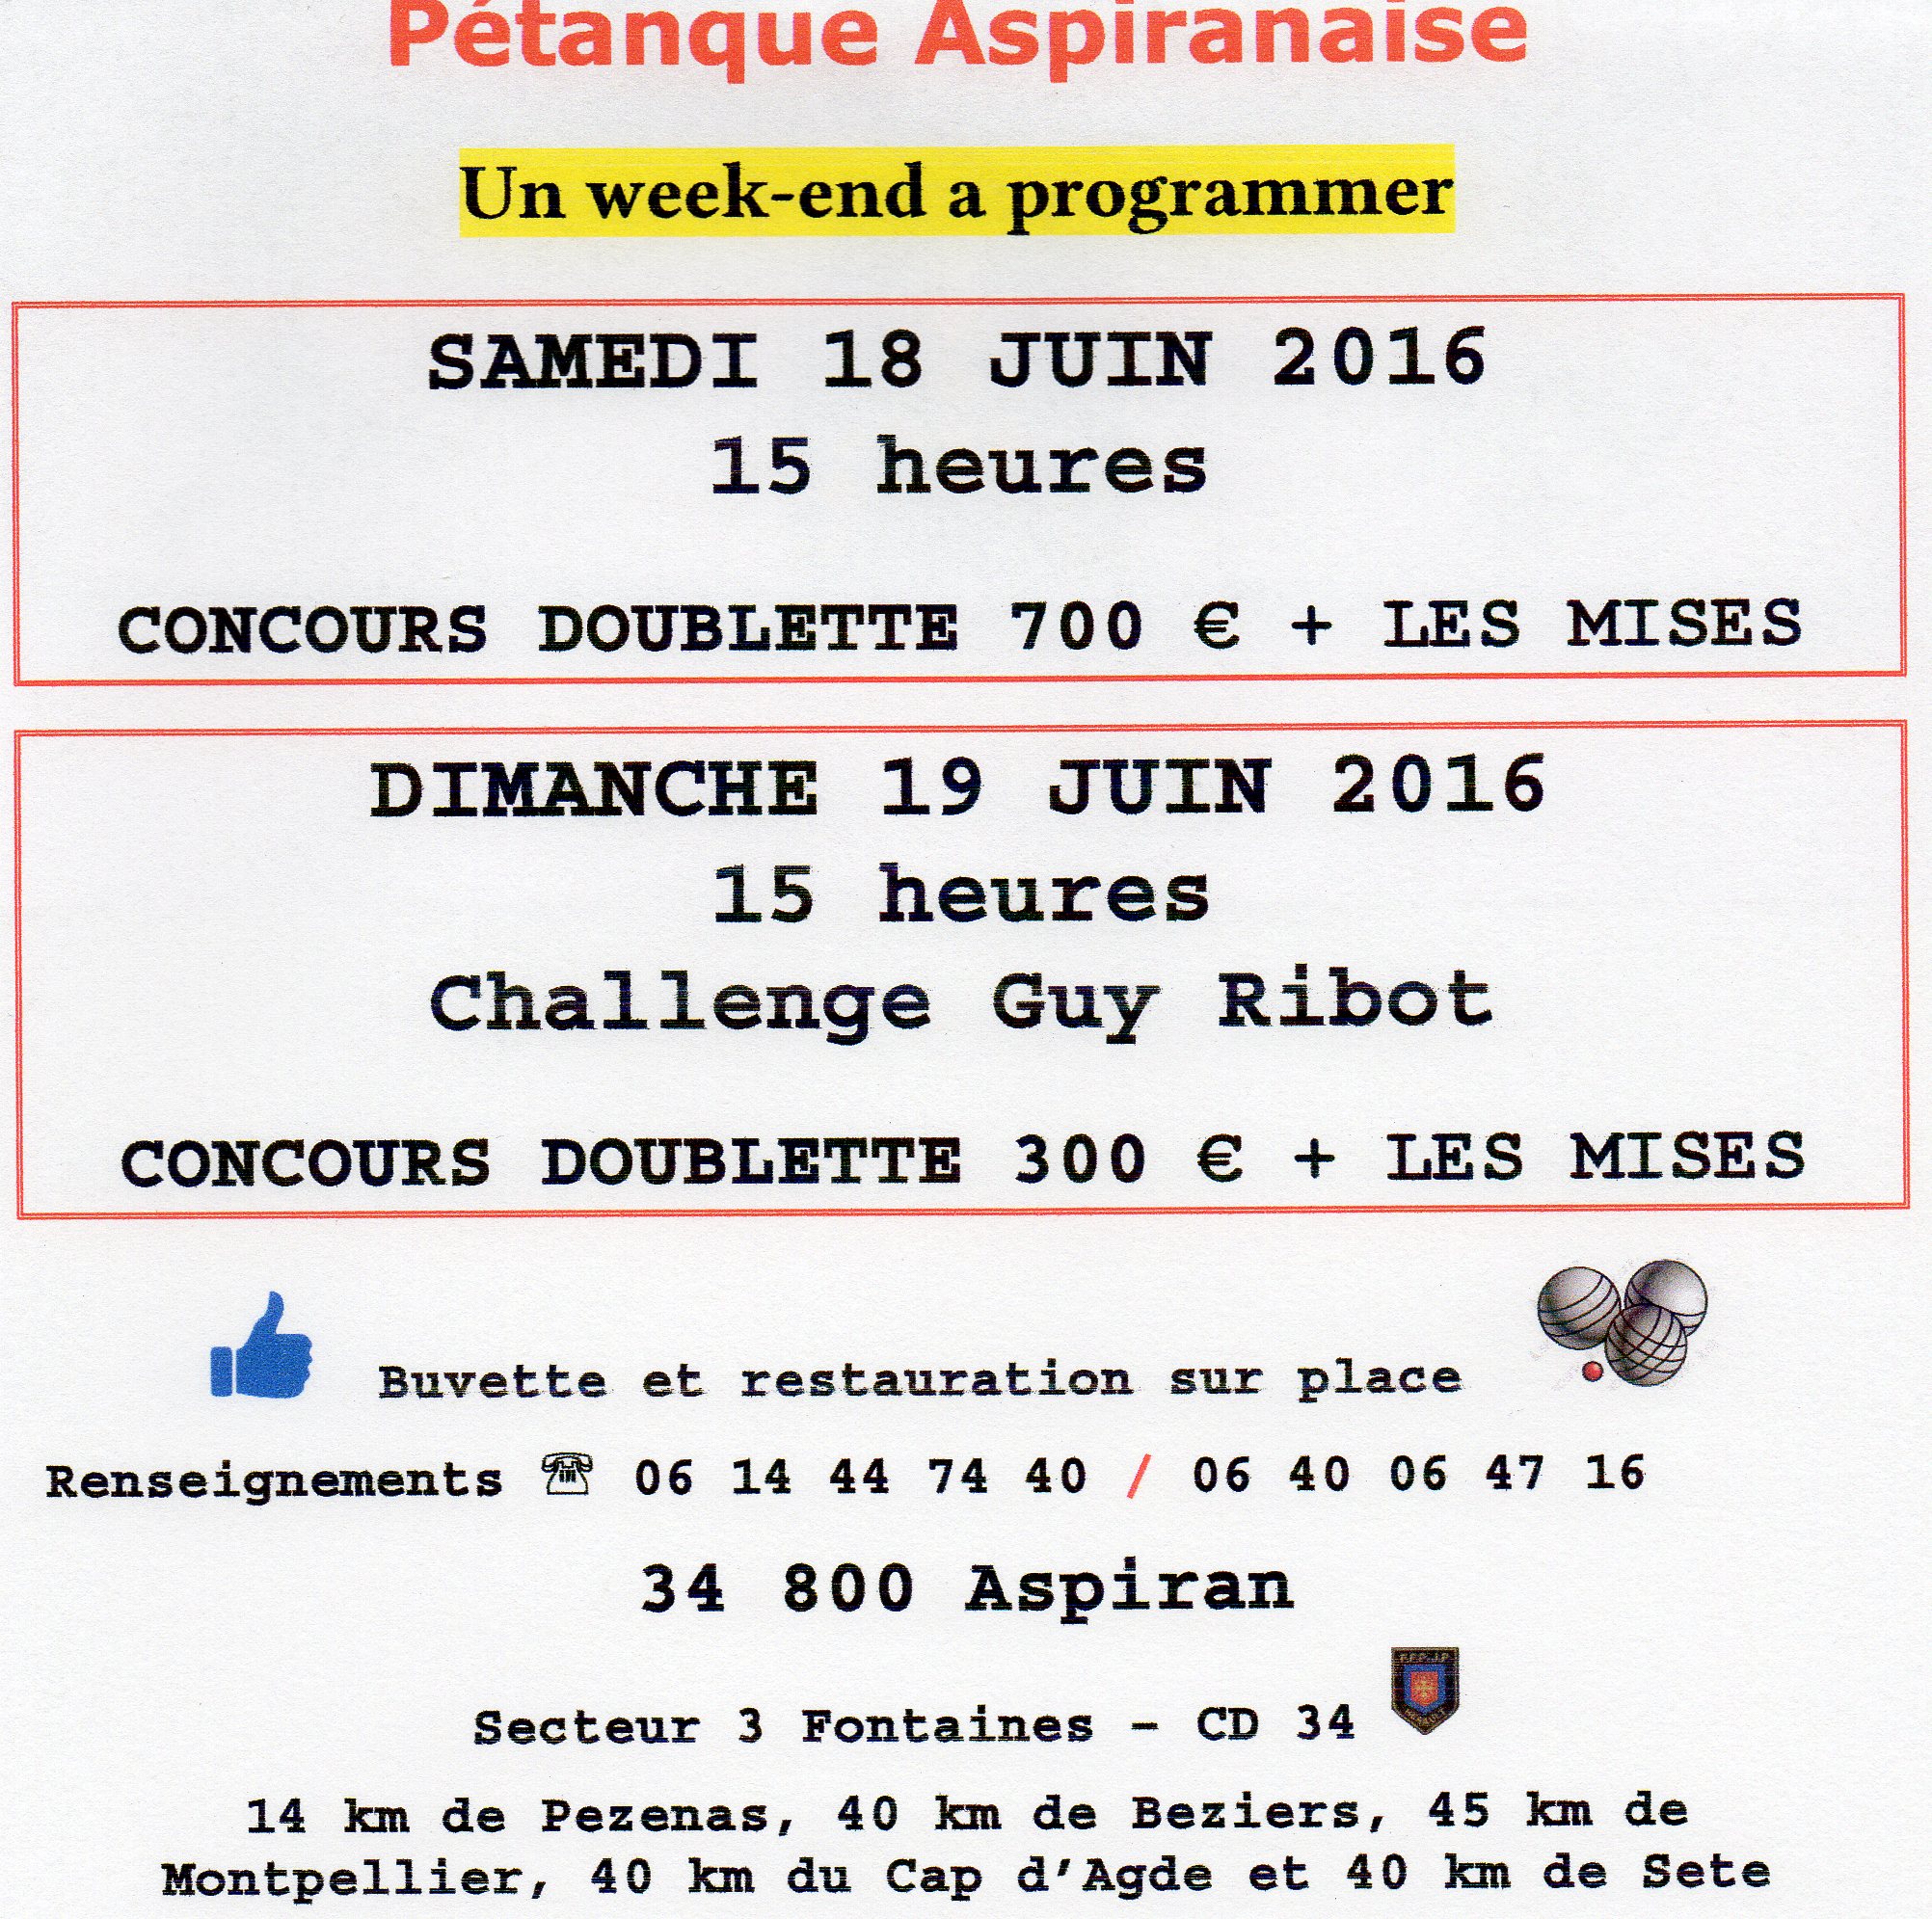 Concours de juin 2016 - Actualité du club de pétanque Pétanque Aspiranaise